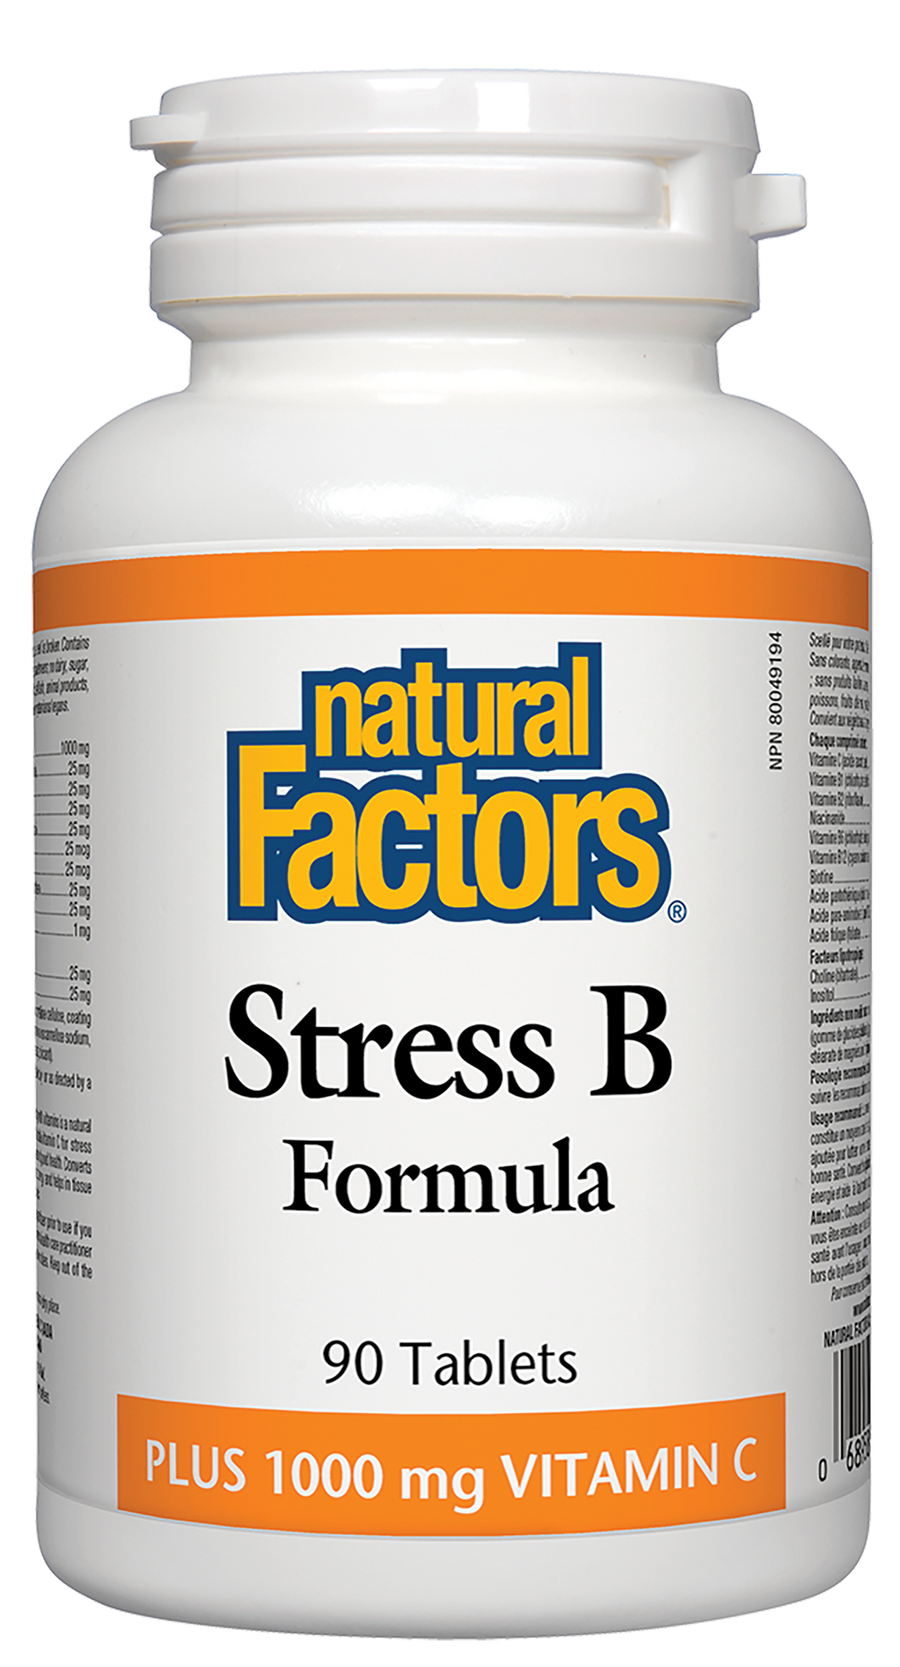 Natural Factors Stress B Formula 90 Tablets